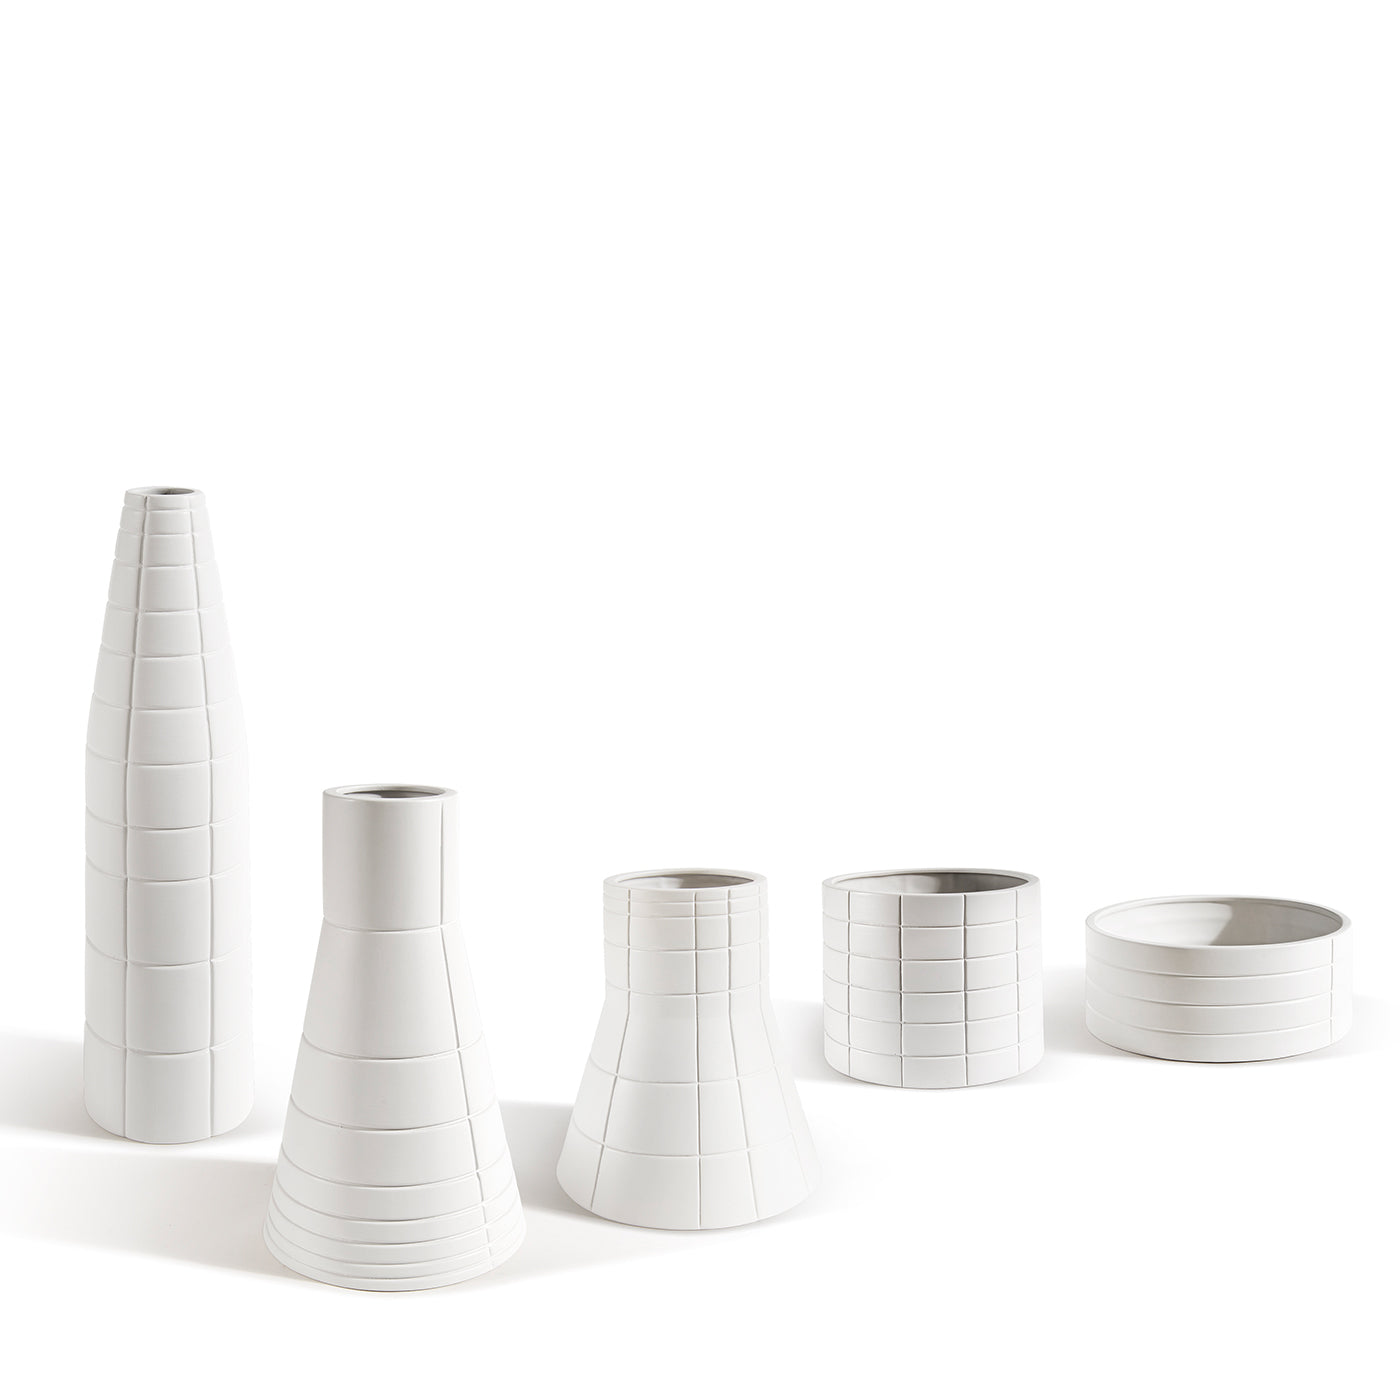 Rikuadra Weiße Keramik-Vase #5 - Alternative Ansicht 1